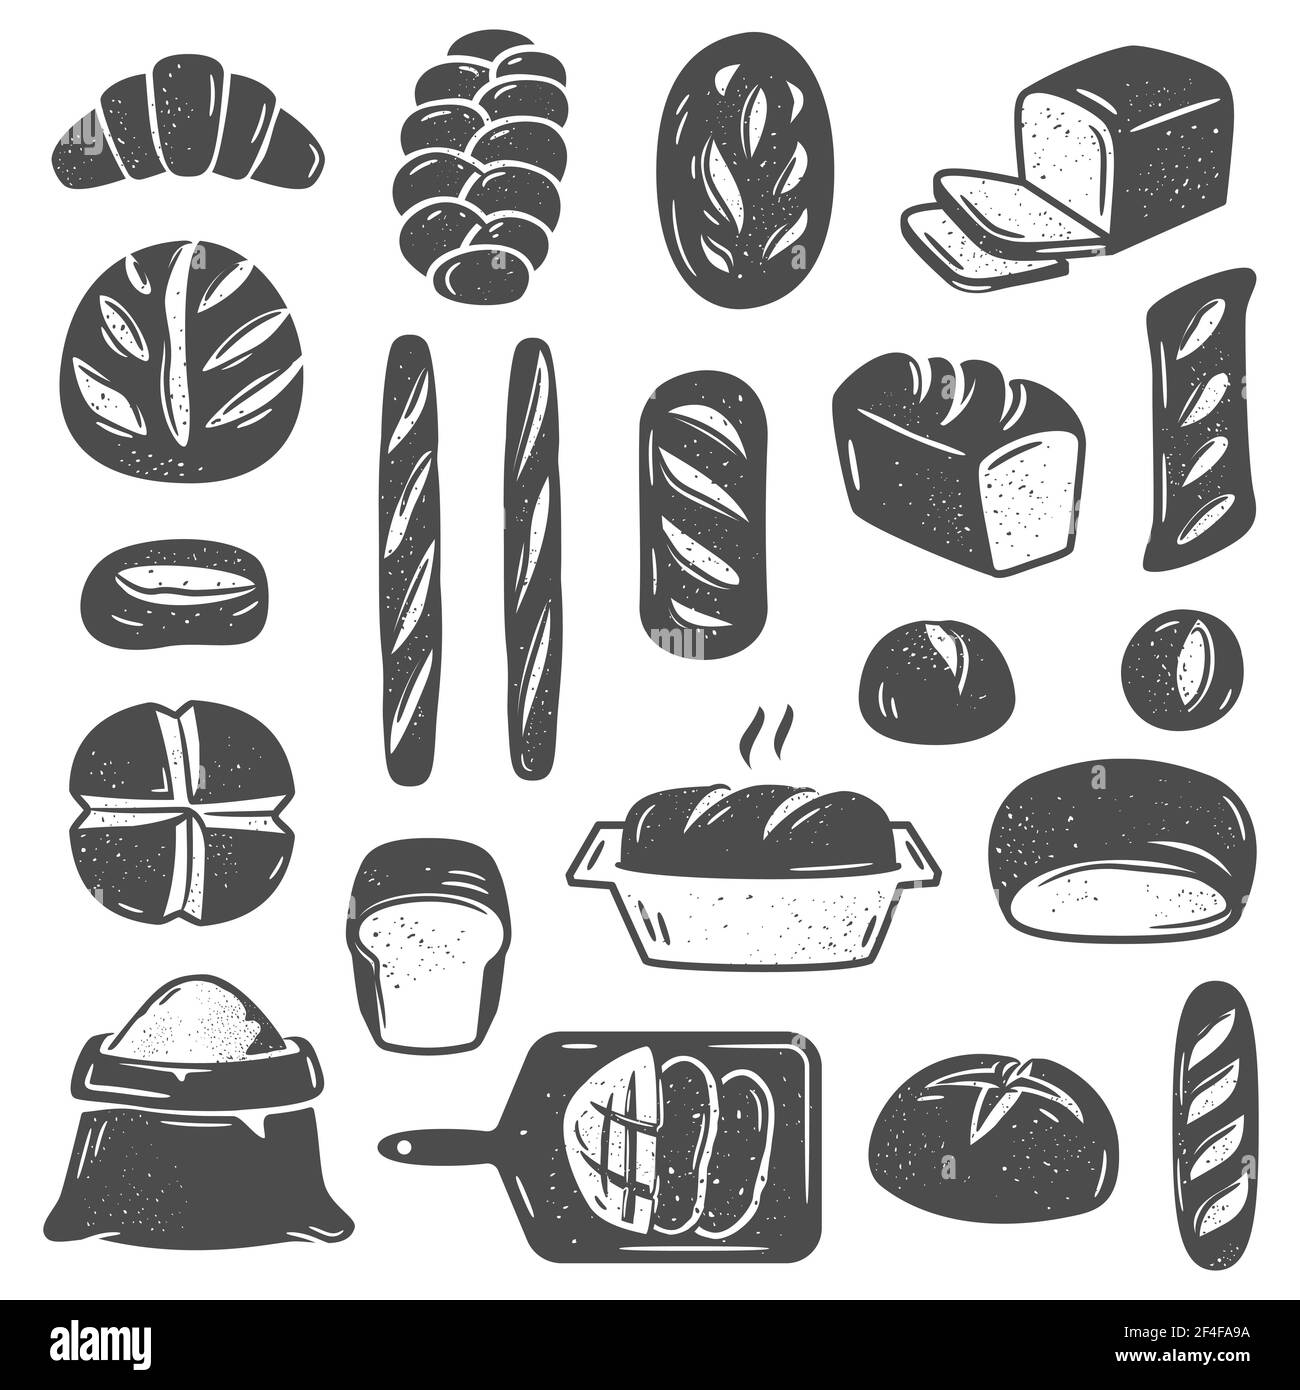 Sammlung von Schwarz-Weiß-Vektorgrafiken verschiedener Typen Von gebackenem Brot und Gebäck verschiedener Formen isoliert auf Weißer Hintergrund Stock Vektor